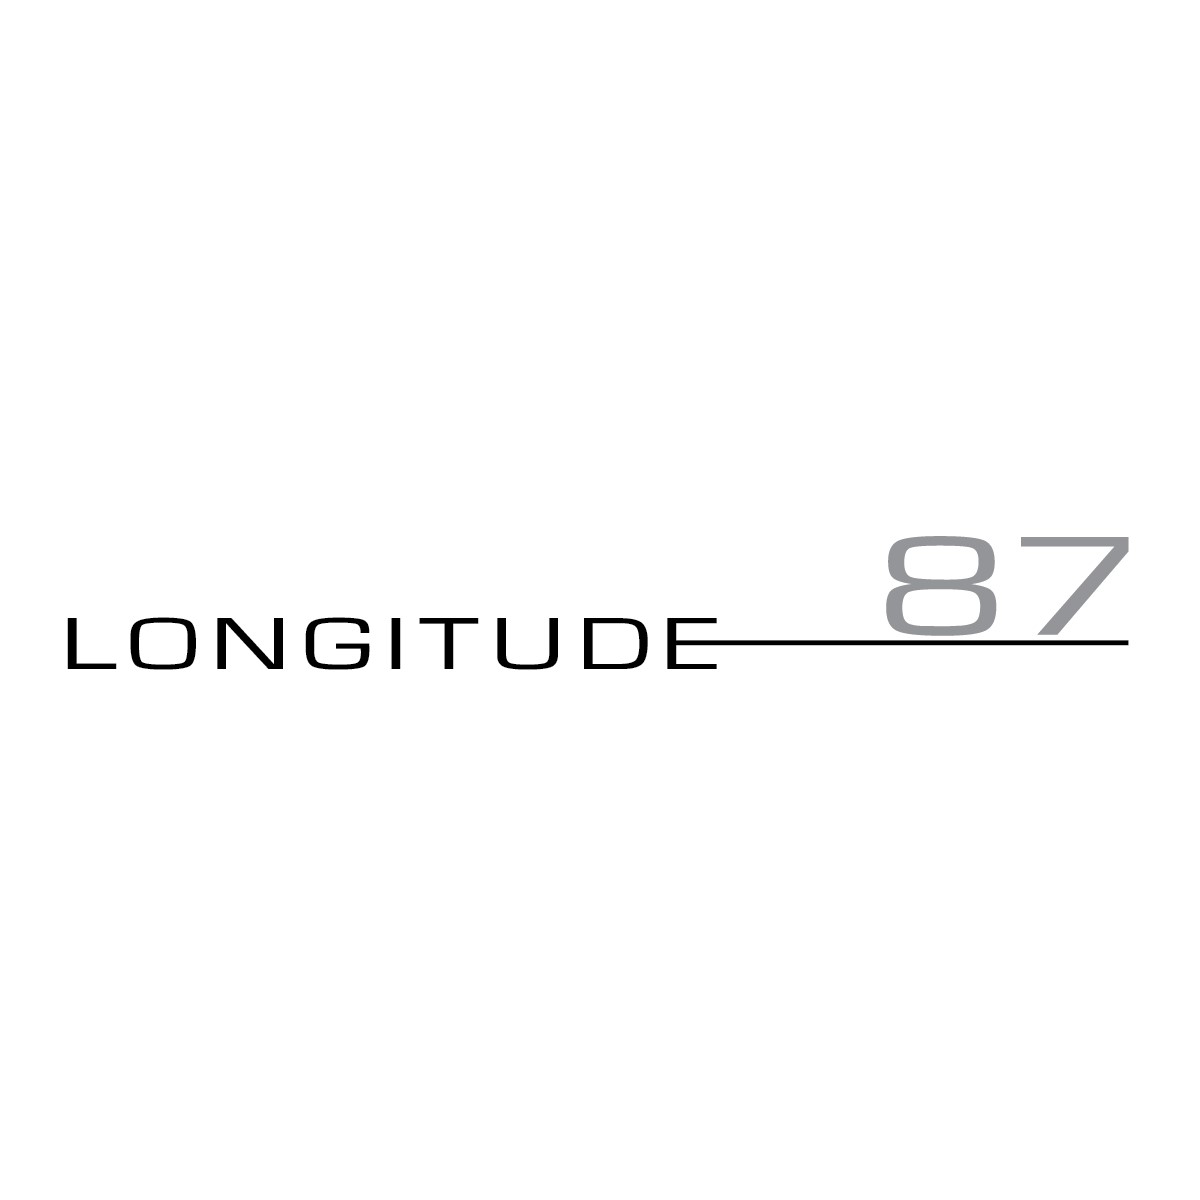 Longitude 87 Bar & Restaurant Logo